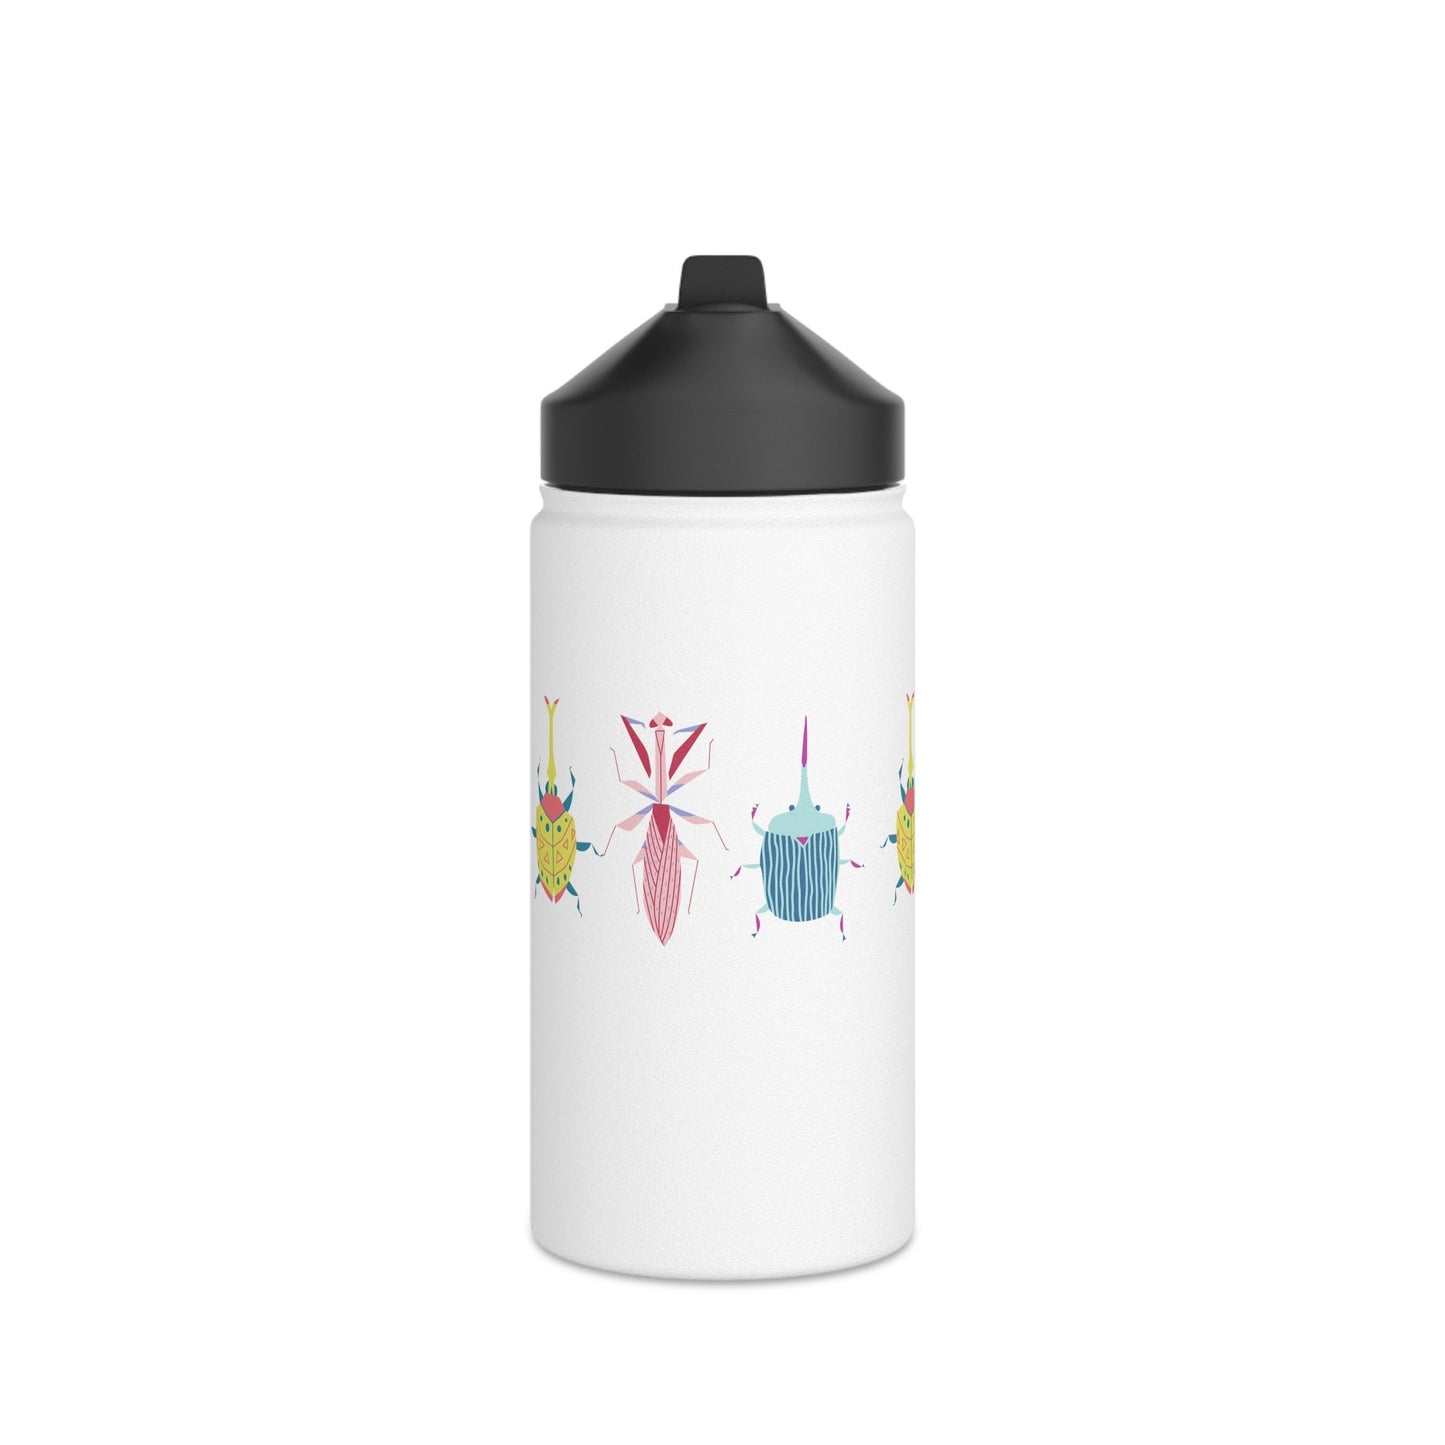 Stainless Steel Water Bottle, Cute Cartoon Bugs, Scandinavian Style Design, Standard Lid no Straw, Metal Bottle 3 sizes 350ml, 530ml, 950ml